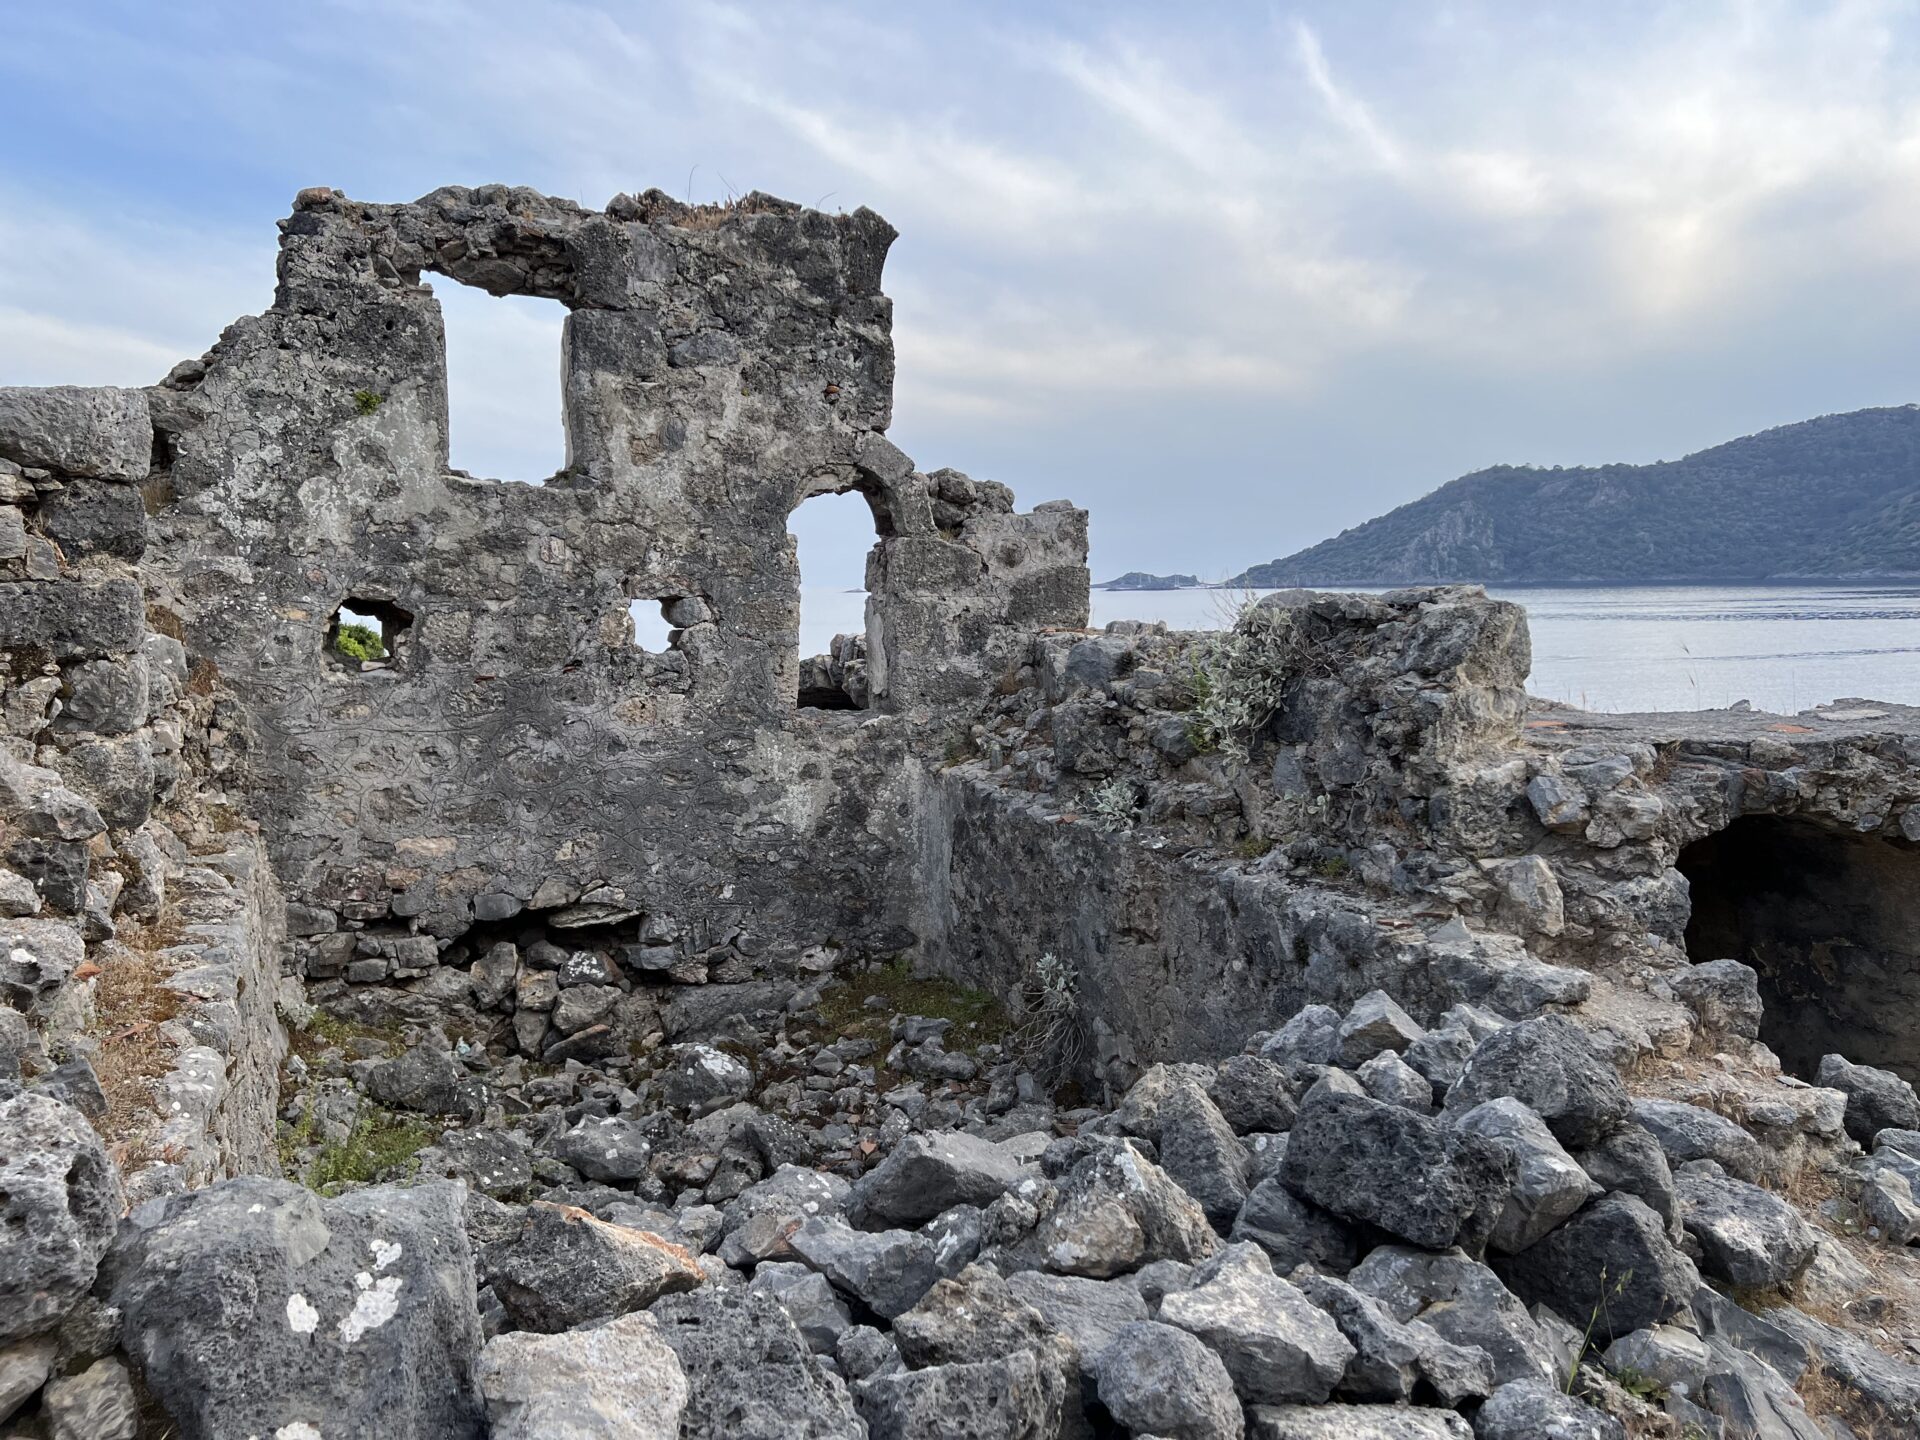 Gemiler Island - Ruins